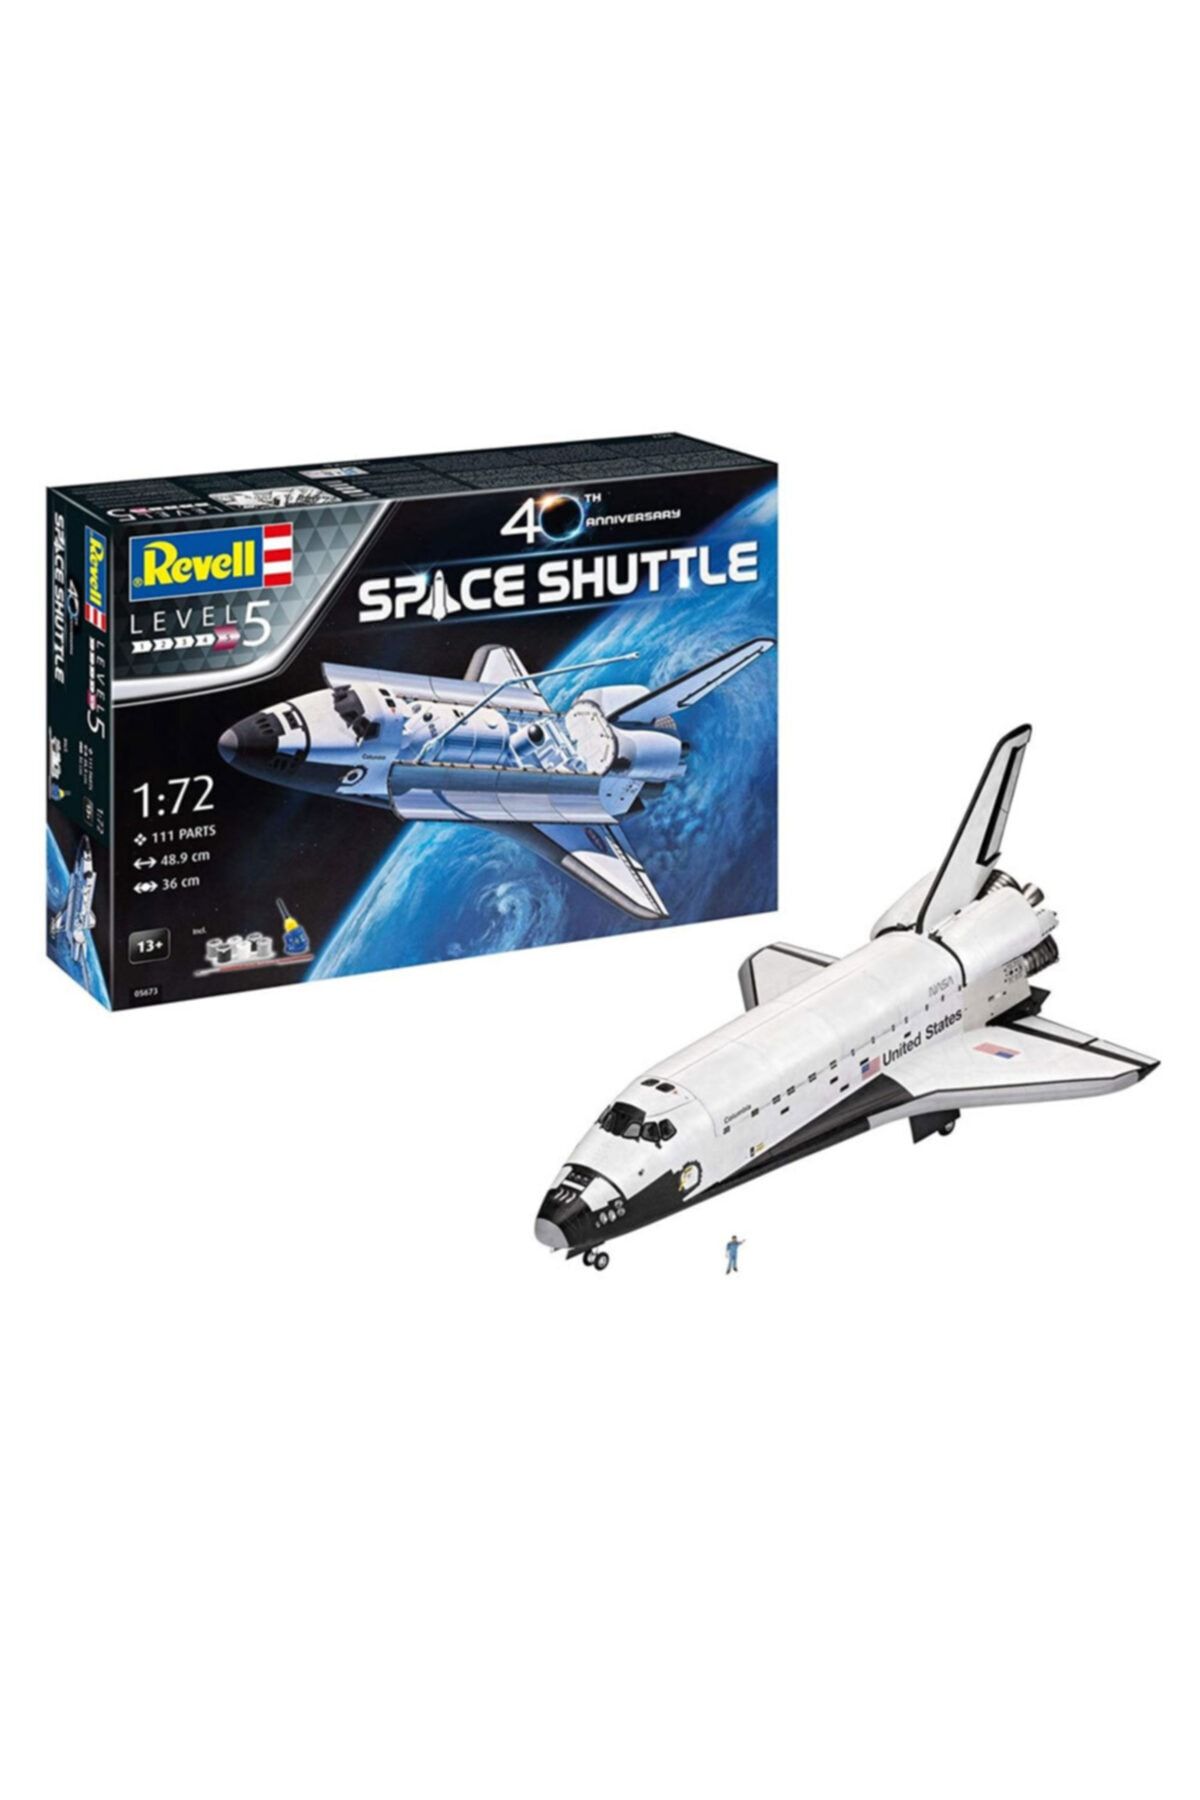 REVELL Maket Gift Set Space Shuttle 5673